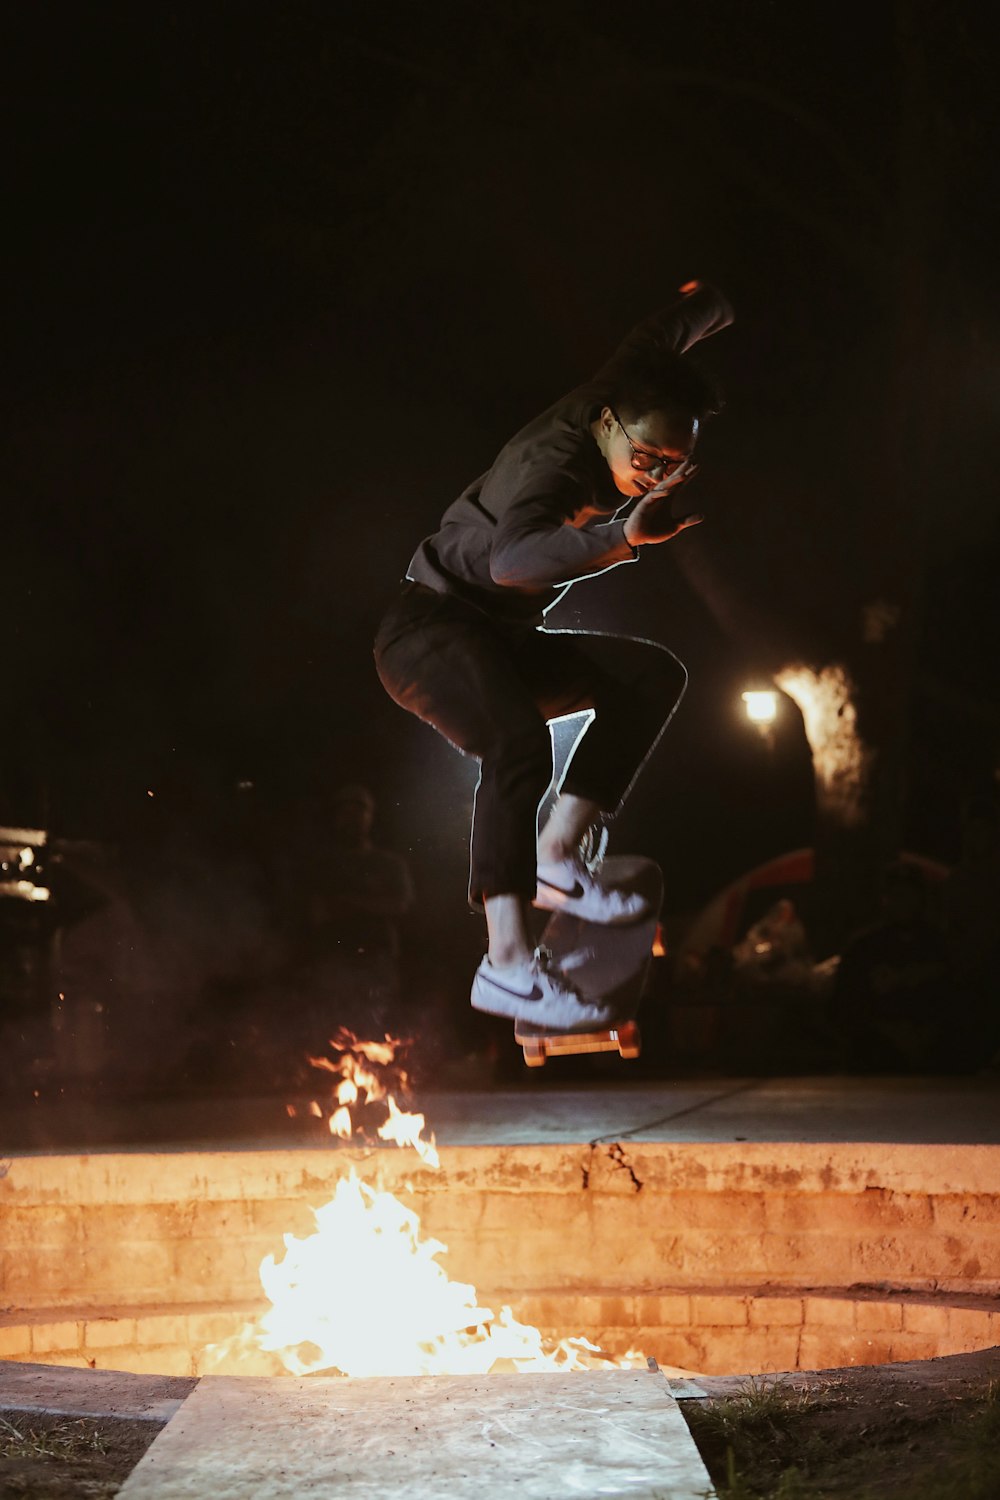 검은 재킷을 입은 남자가 불 근처에서 스케이트 보드